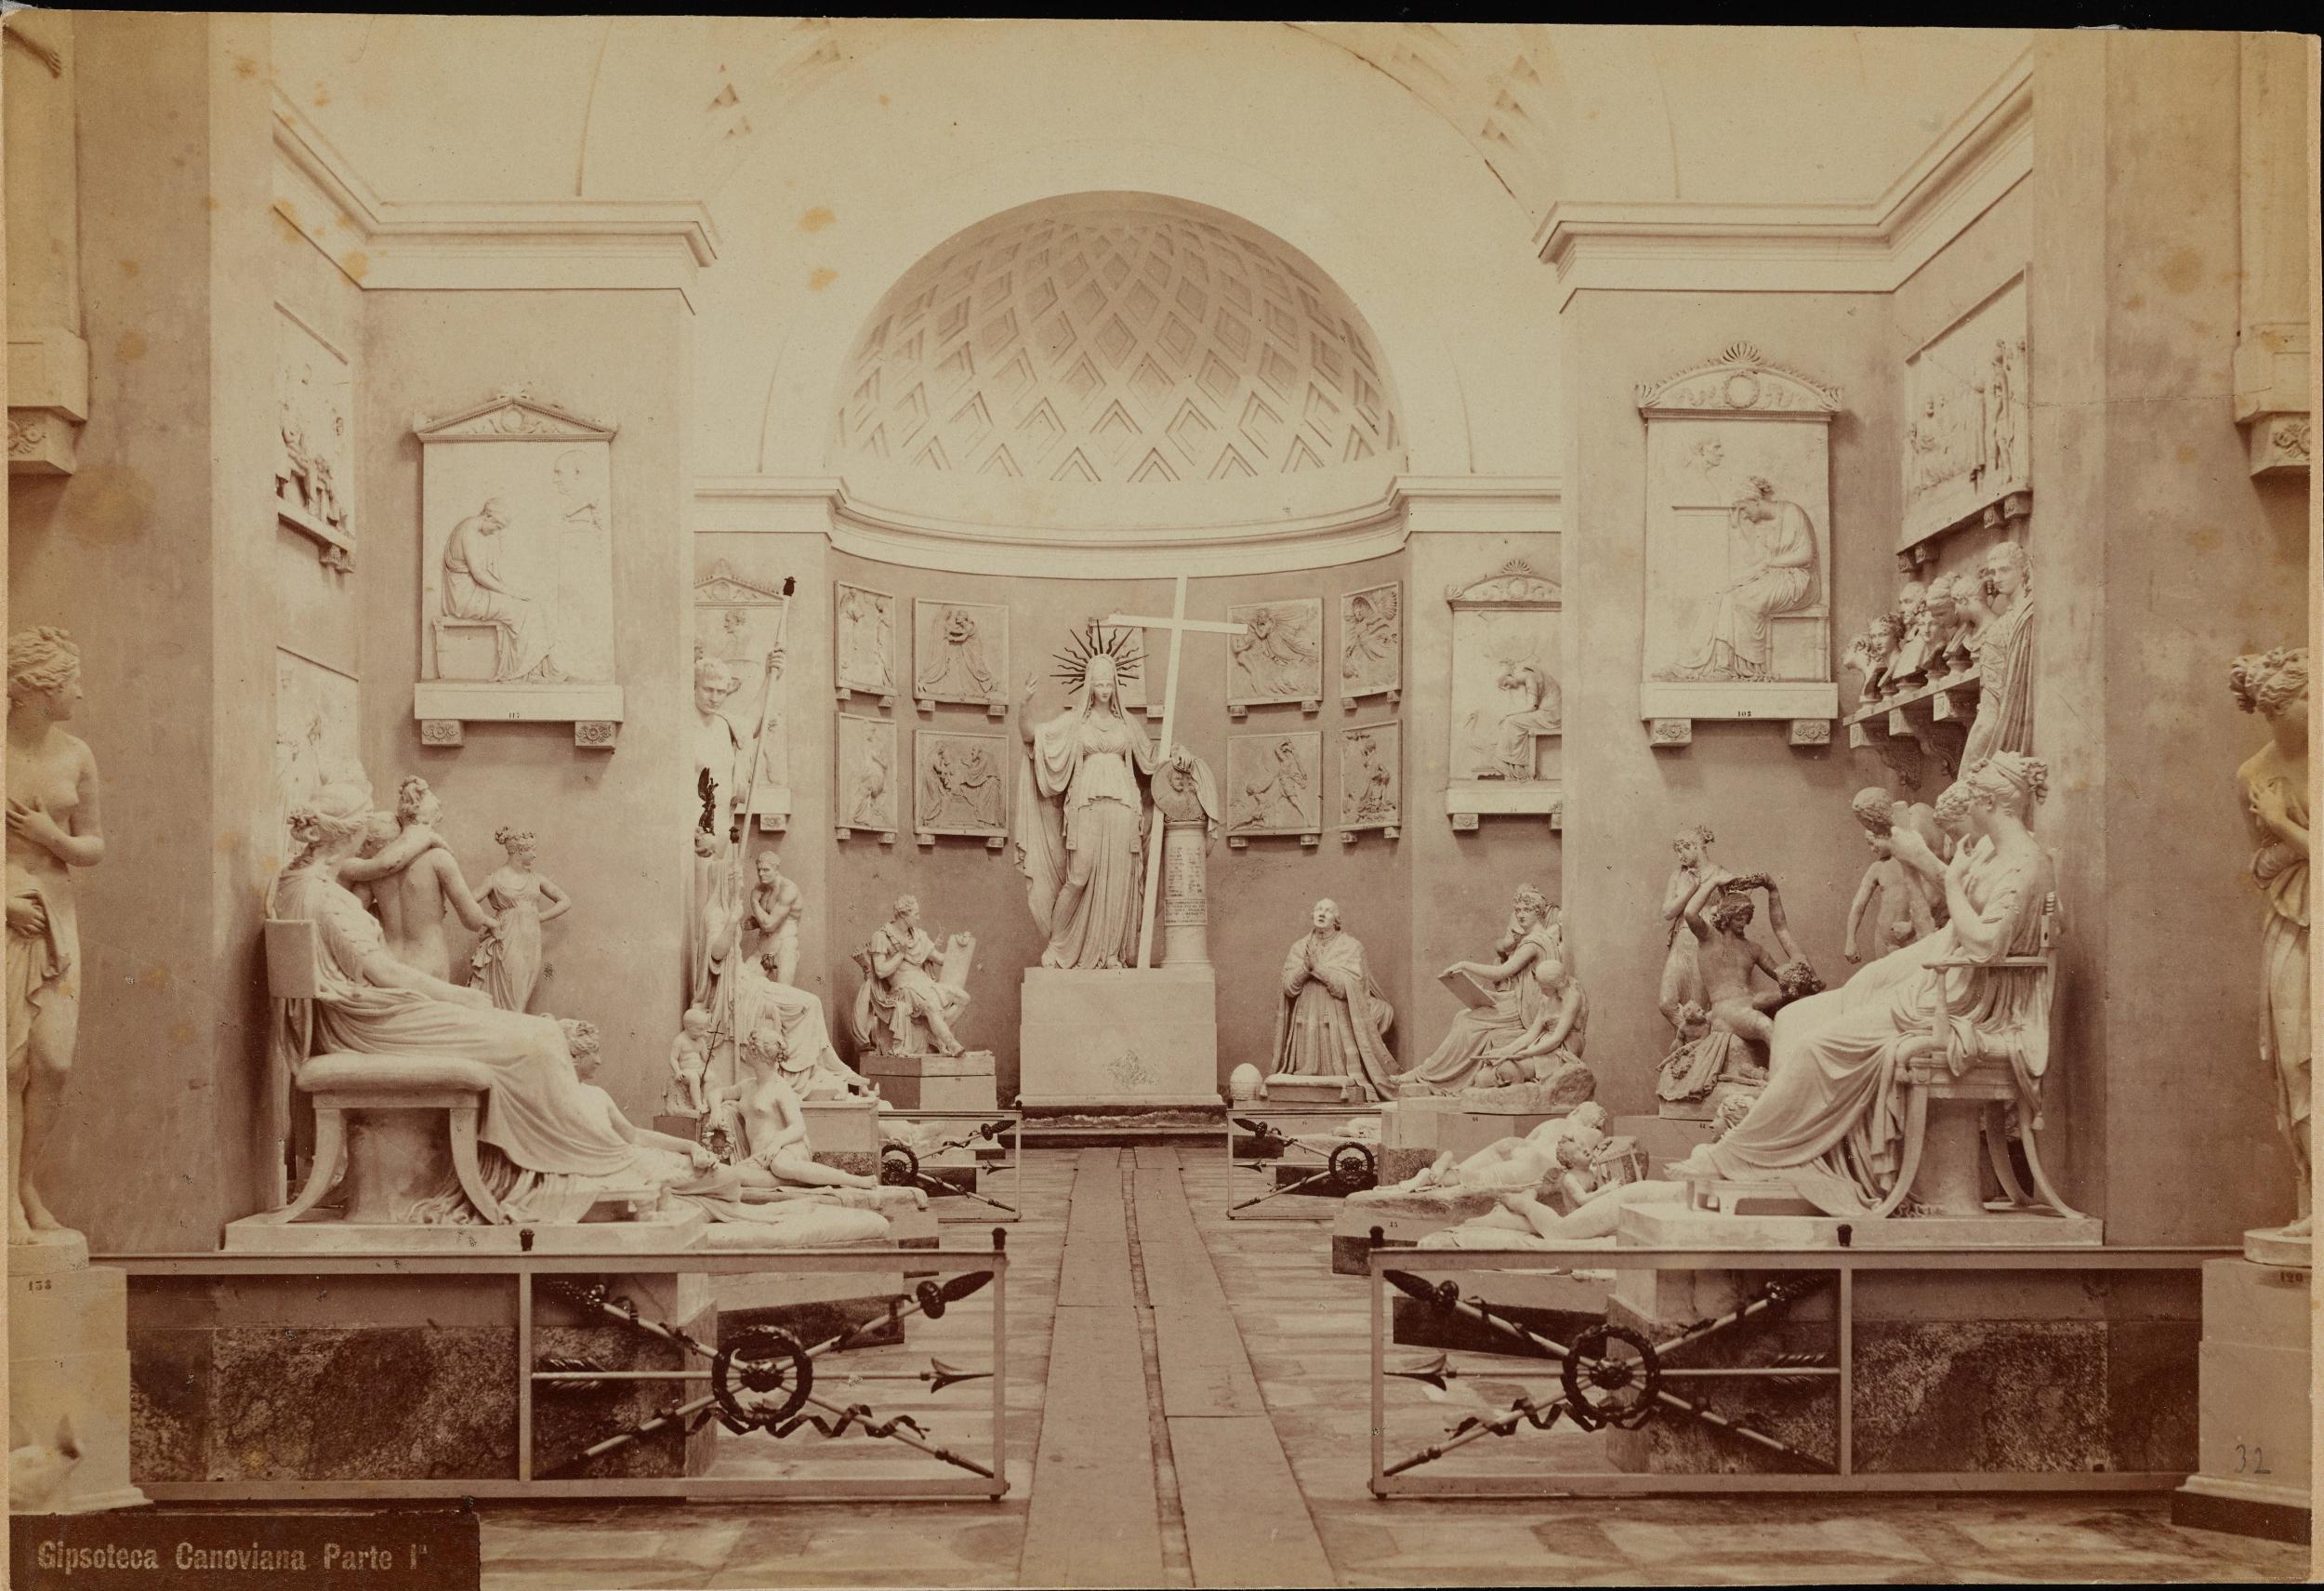 Fotografo non identificato, Possagno - Museo Canova, Gipsoteca, veduta della sala, albumina, MPI306550